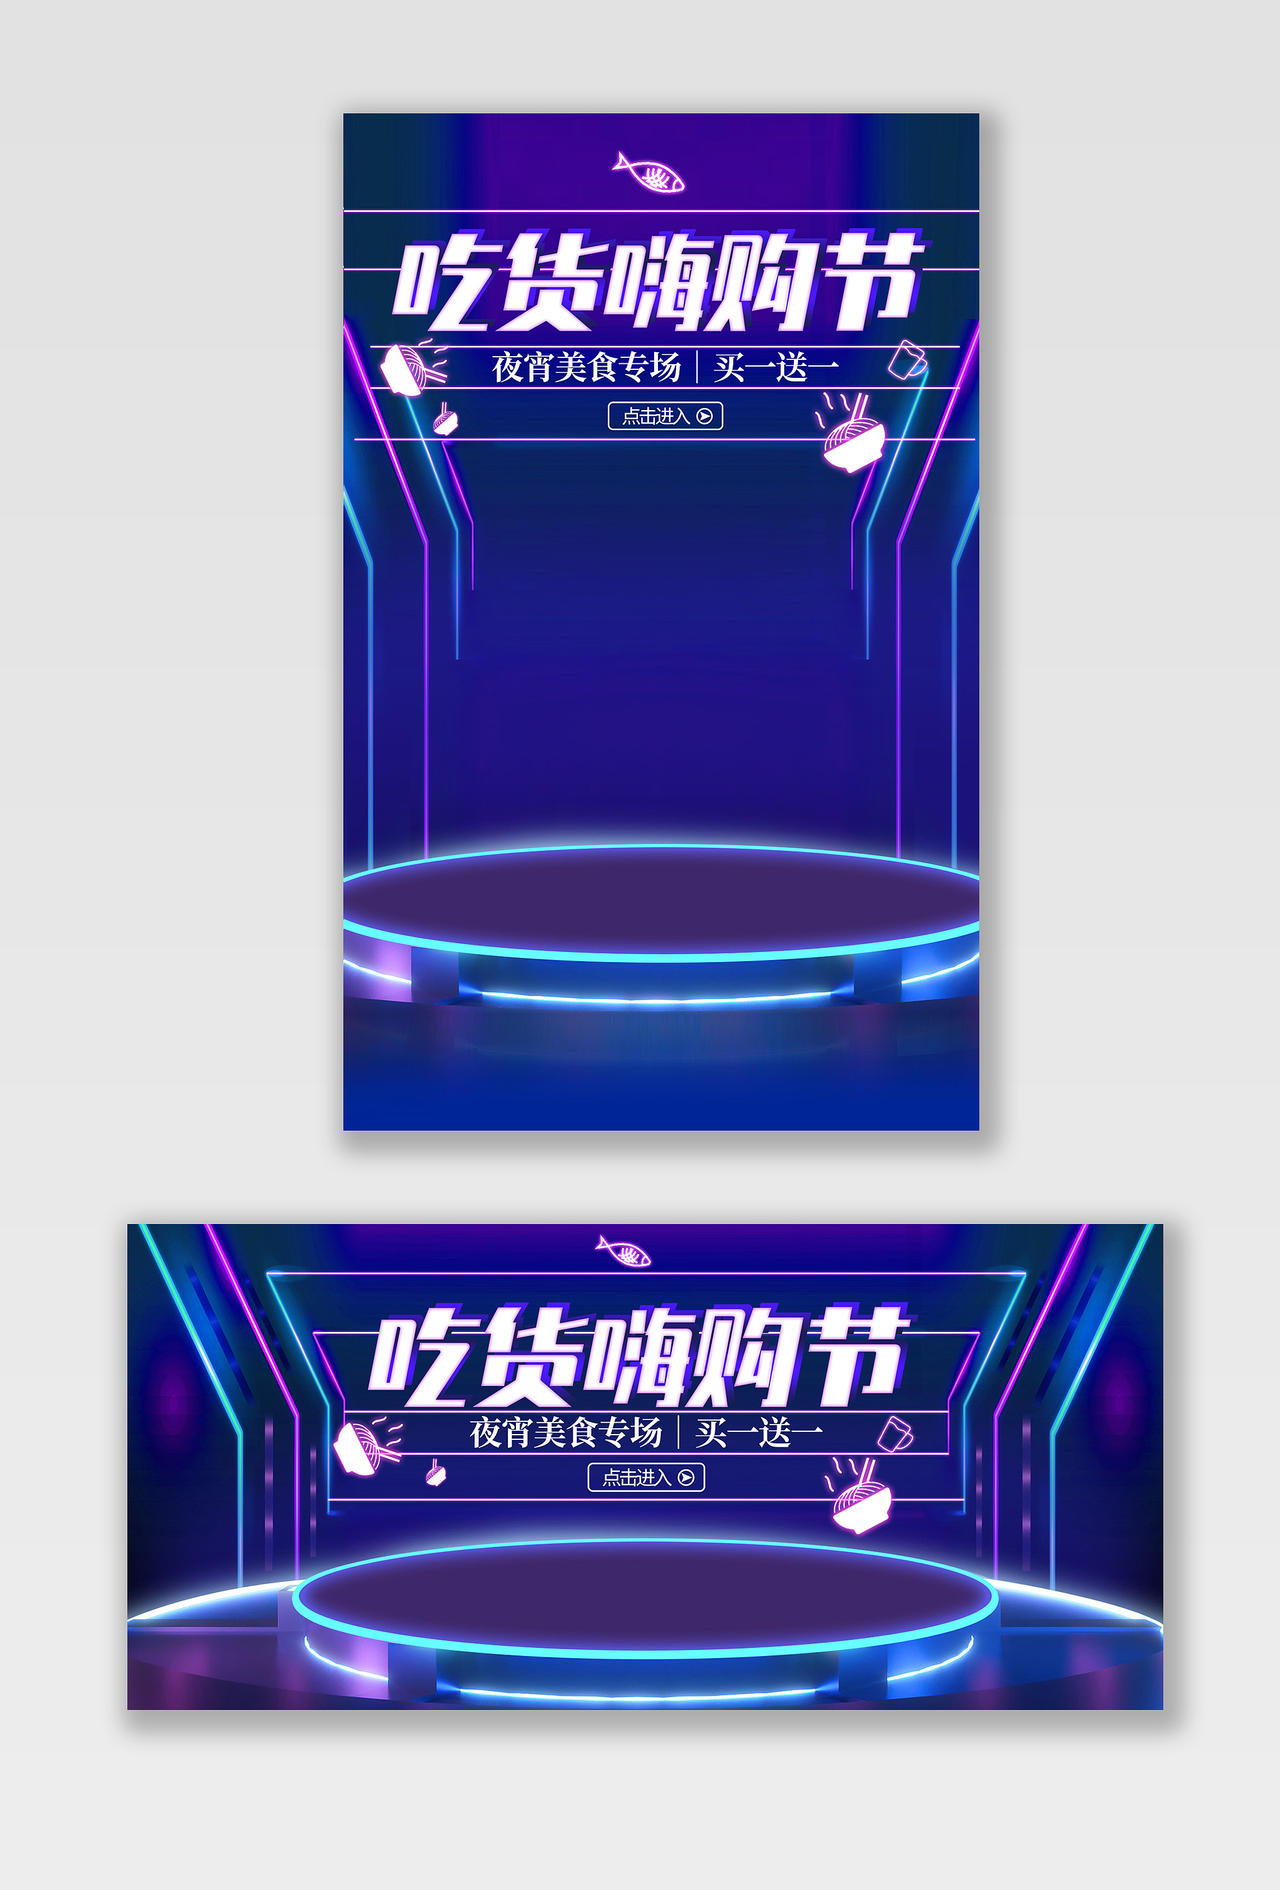 电商蓝色科技淘宝天猫717吃货节海报banner模板